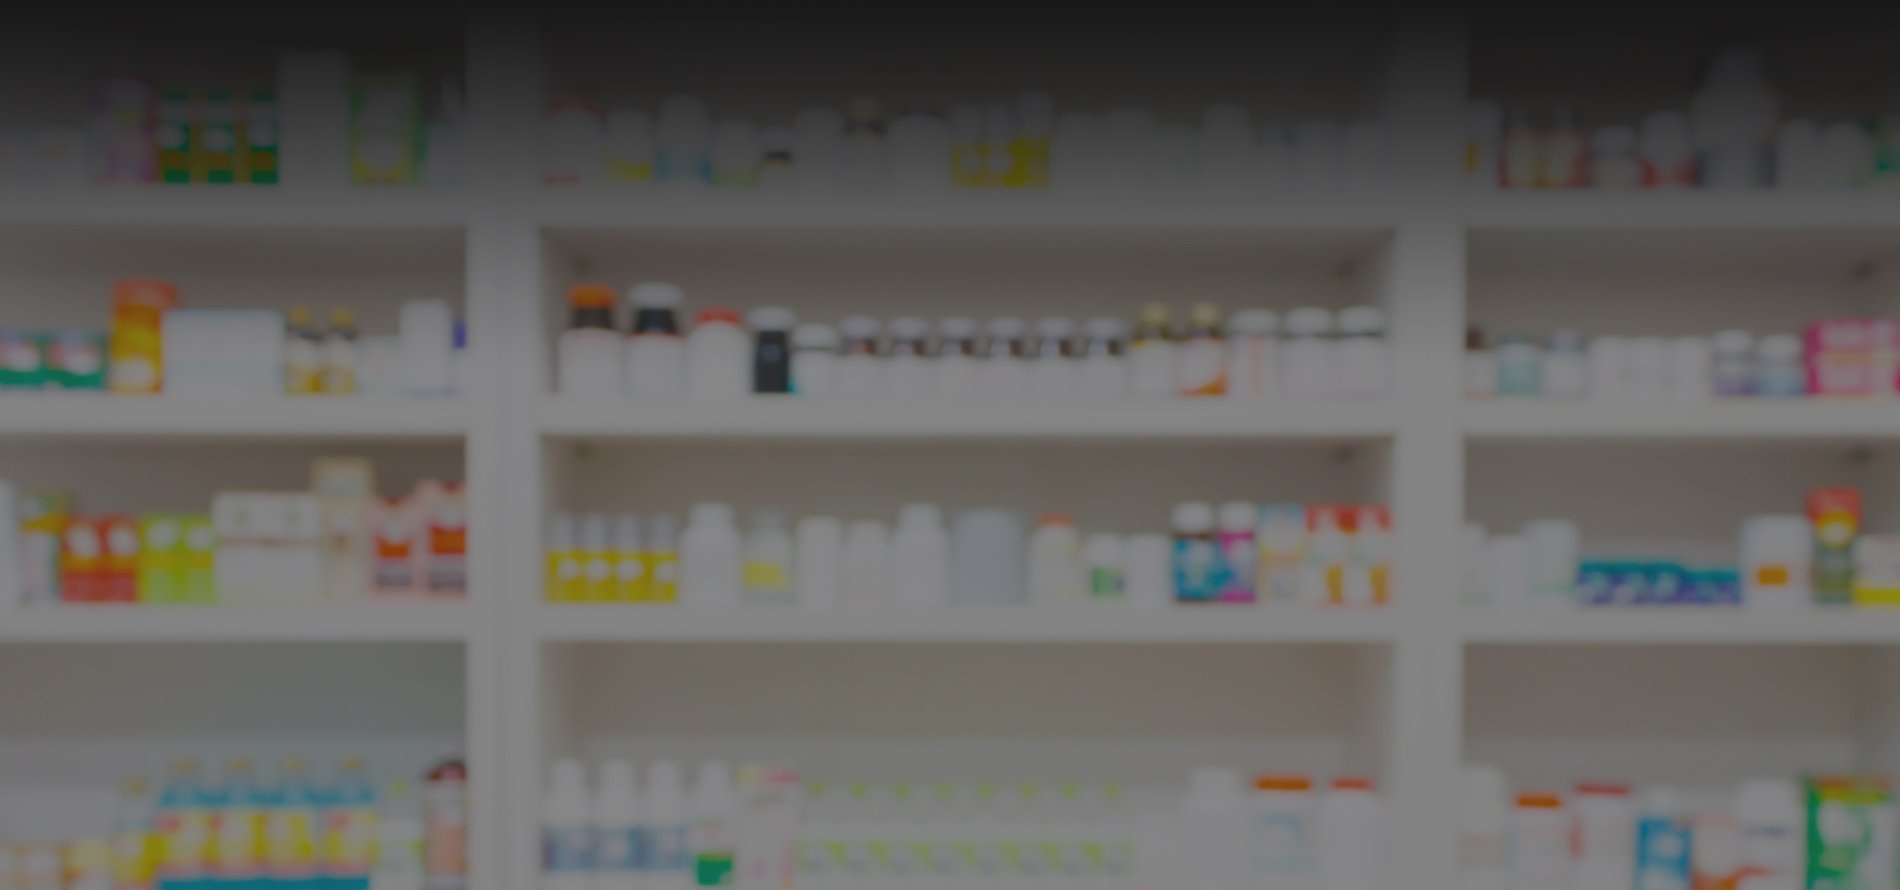 rows of pill bottles on a pharmacy shelf